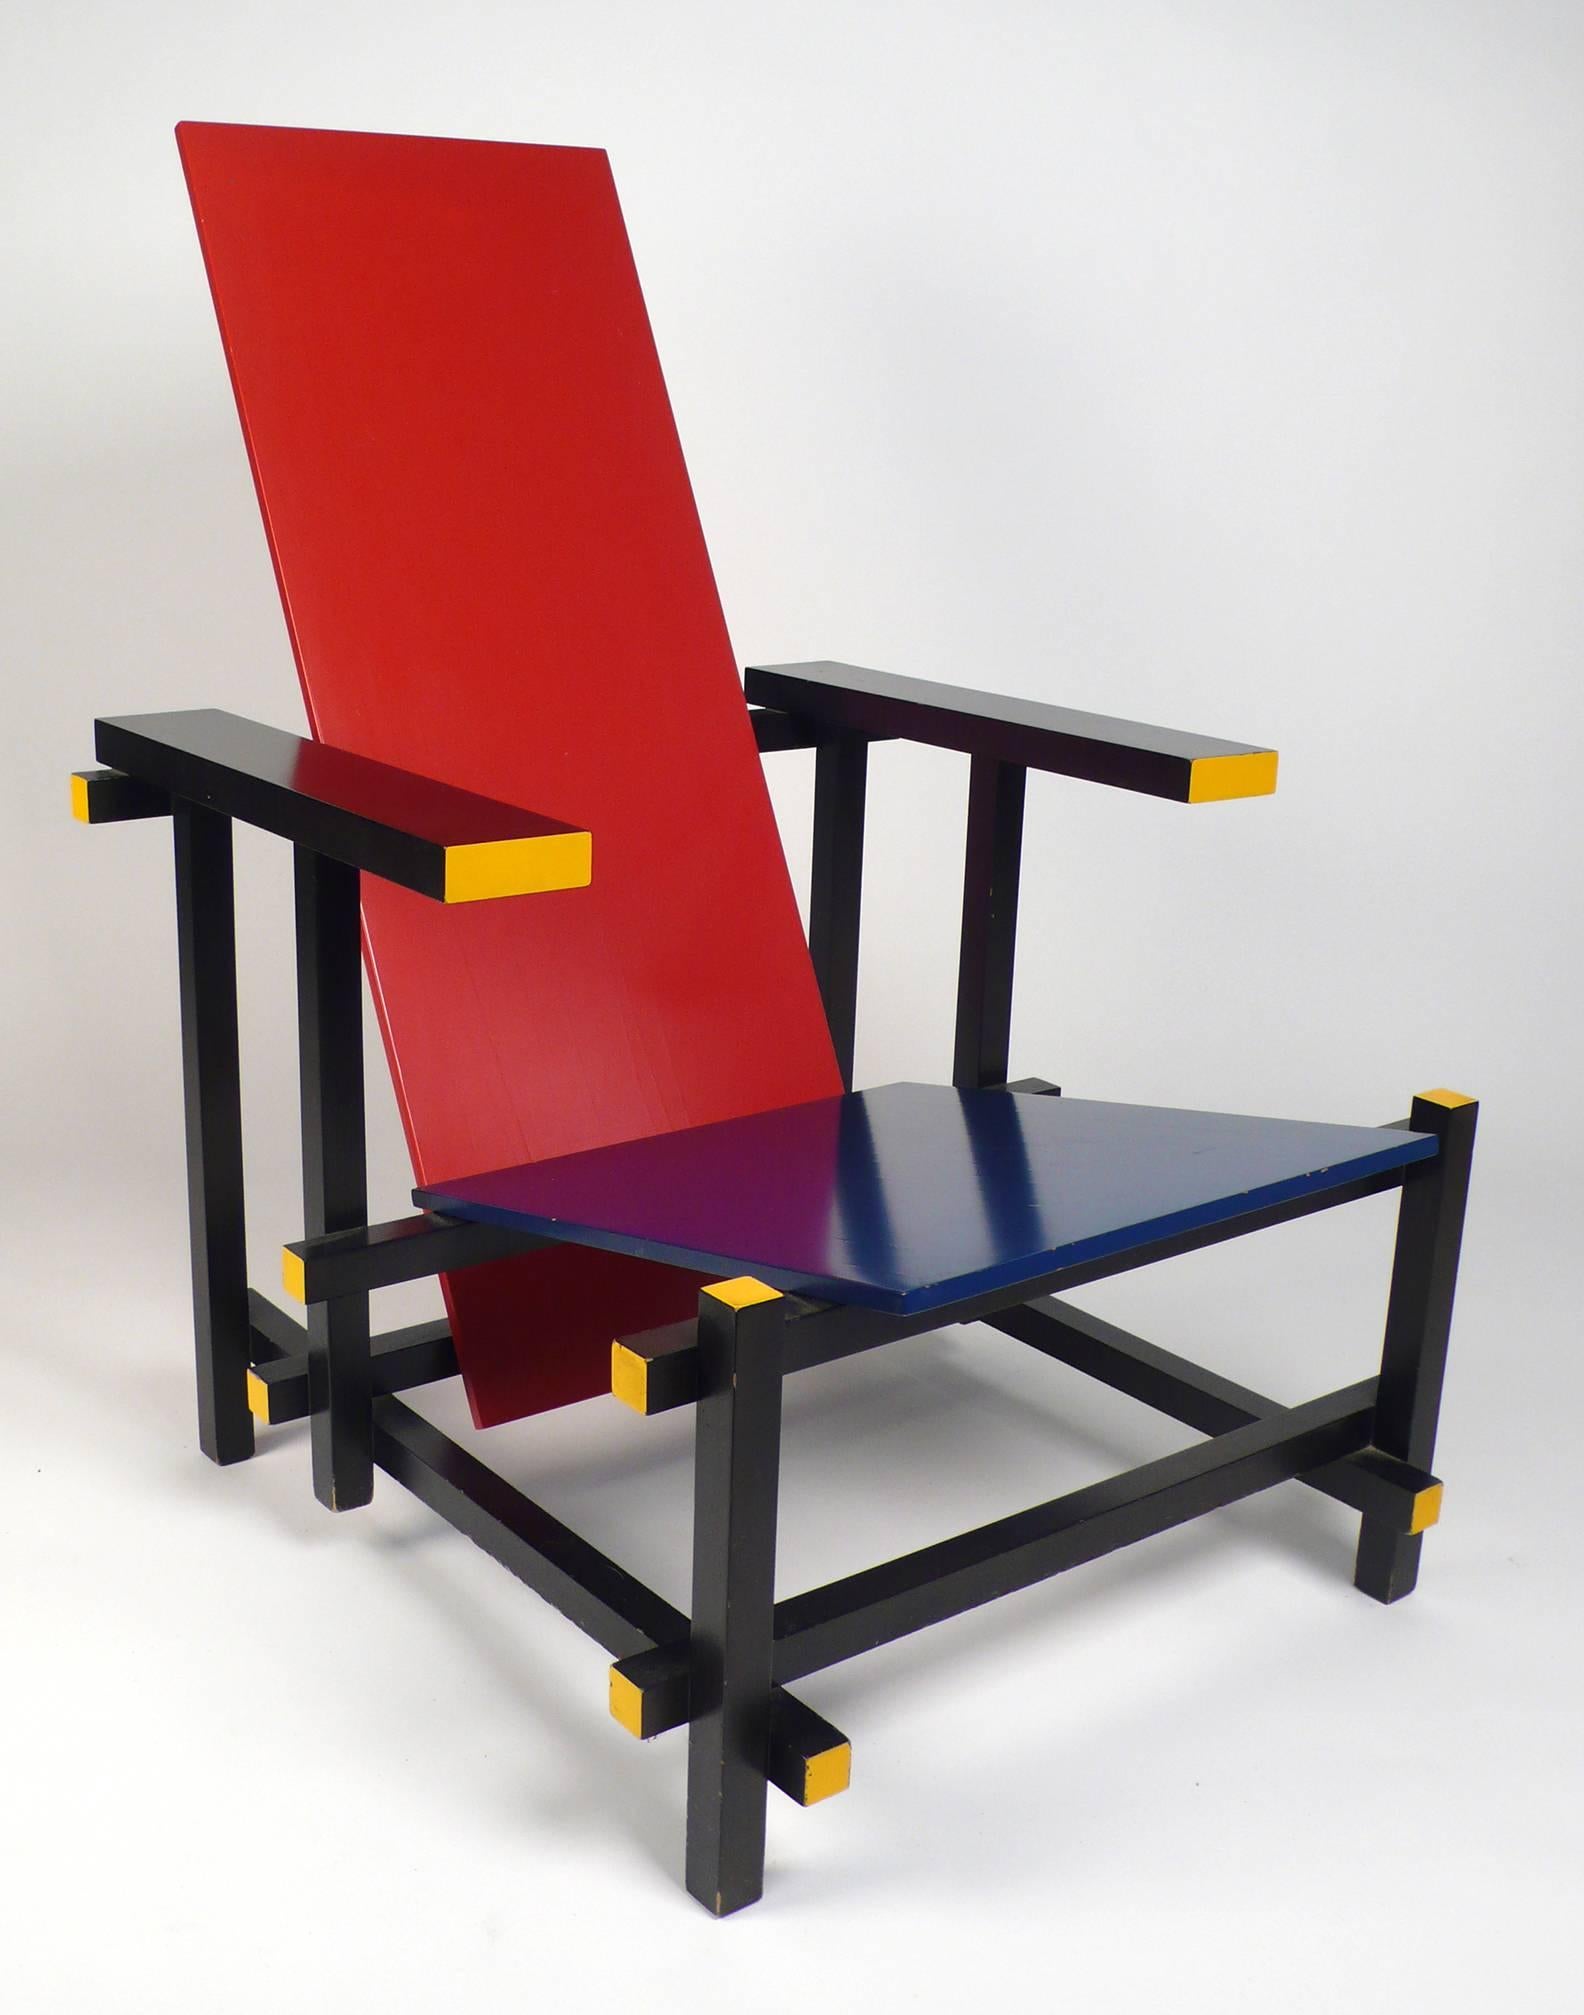 Vintage-Stuhl von Gerrit Rietveld, hergestellt unter Lizenz von Cassina. Auf der Unterseite des Stuhls gestempelt und nummeriert. Aus dem Nachlass eines bekannten lokalen Architekten. Ein schönes Beispiel, dass die perfekte Menge von Alter und